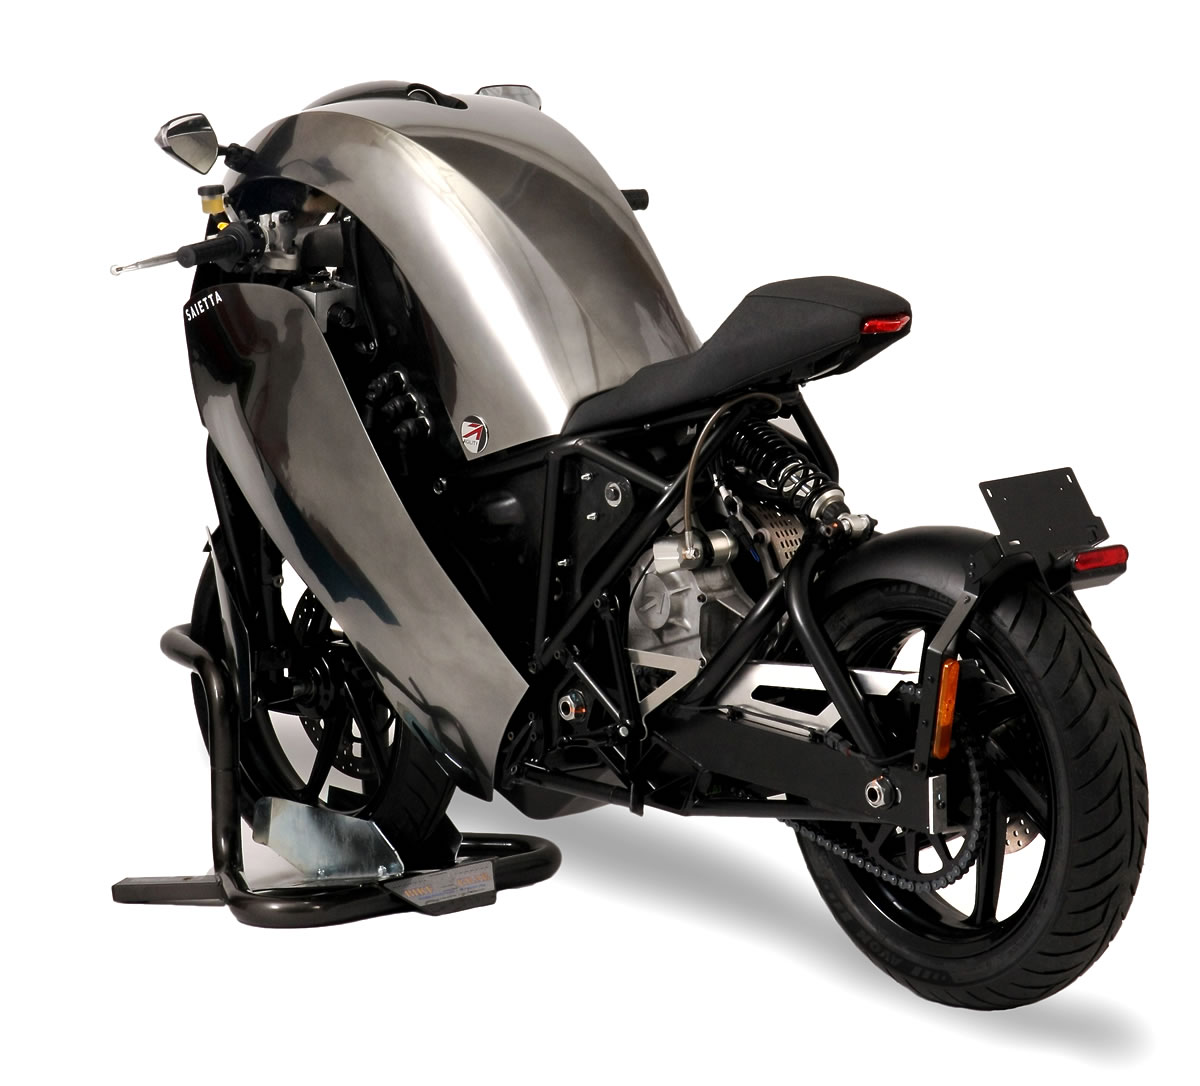 Saietta R electric sports bike on US trade mission